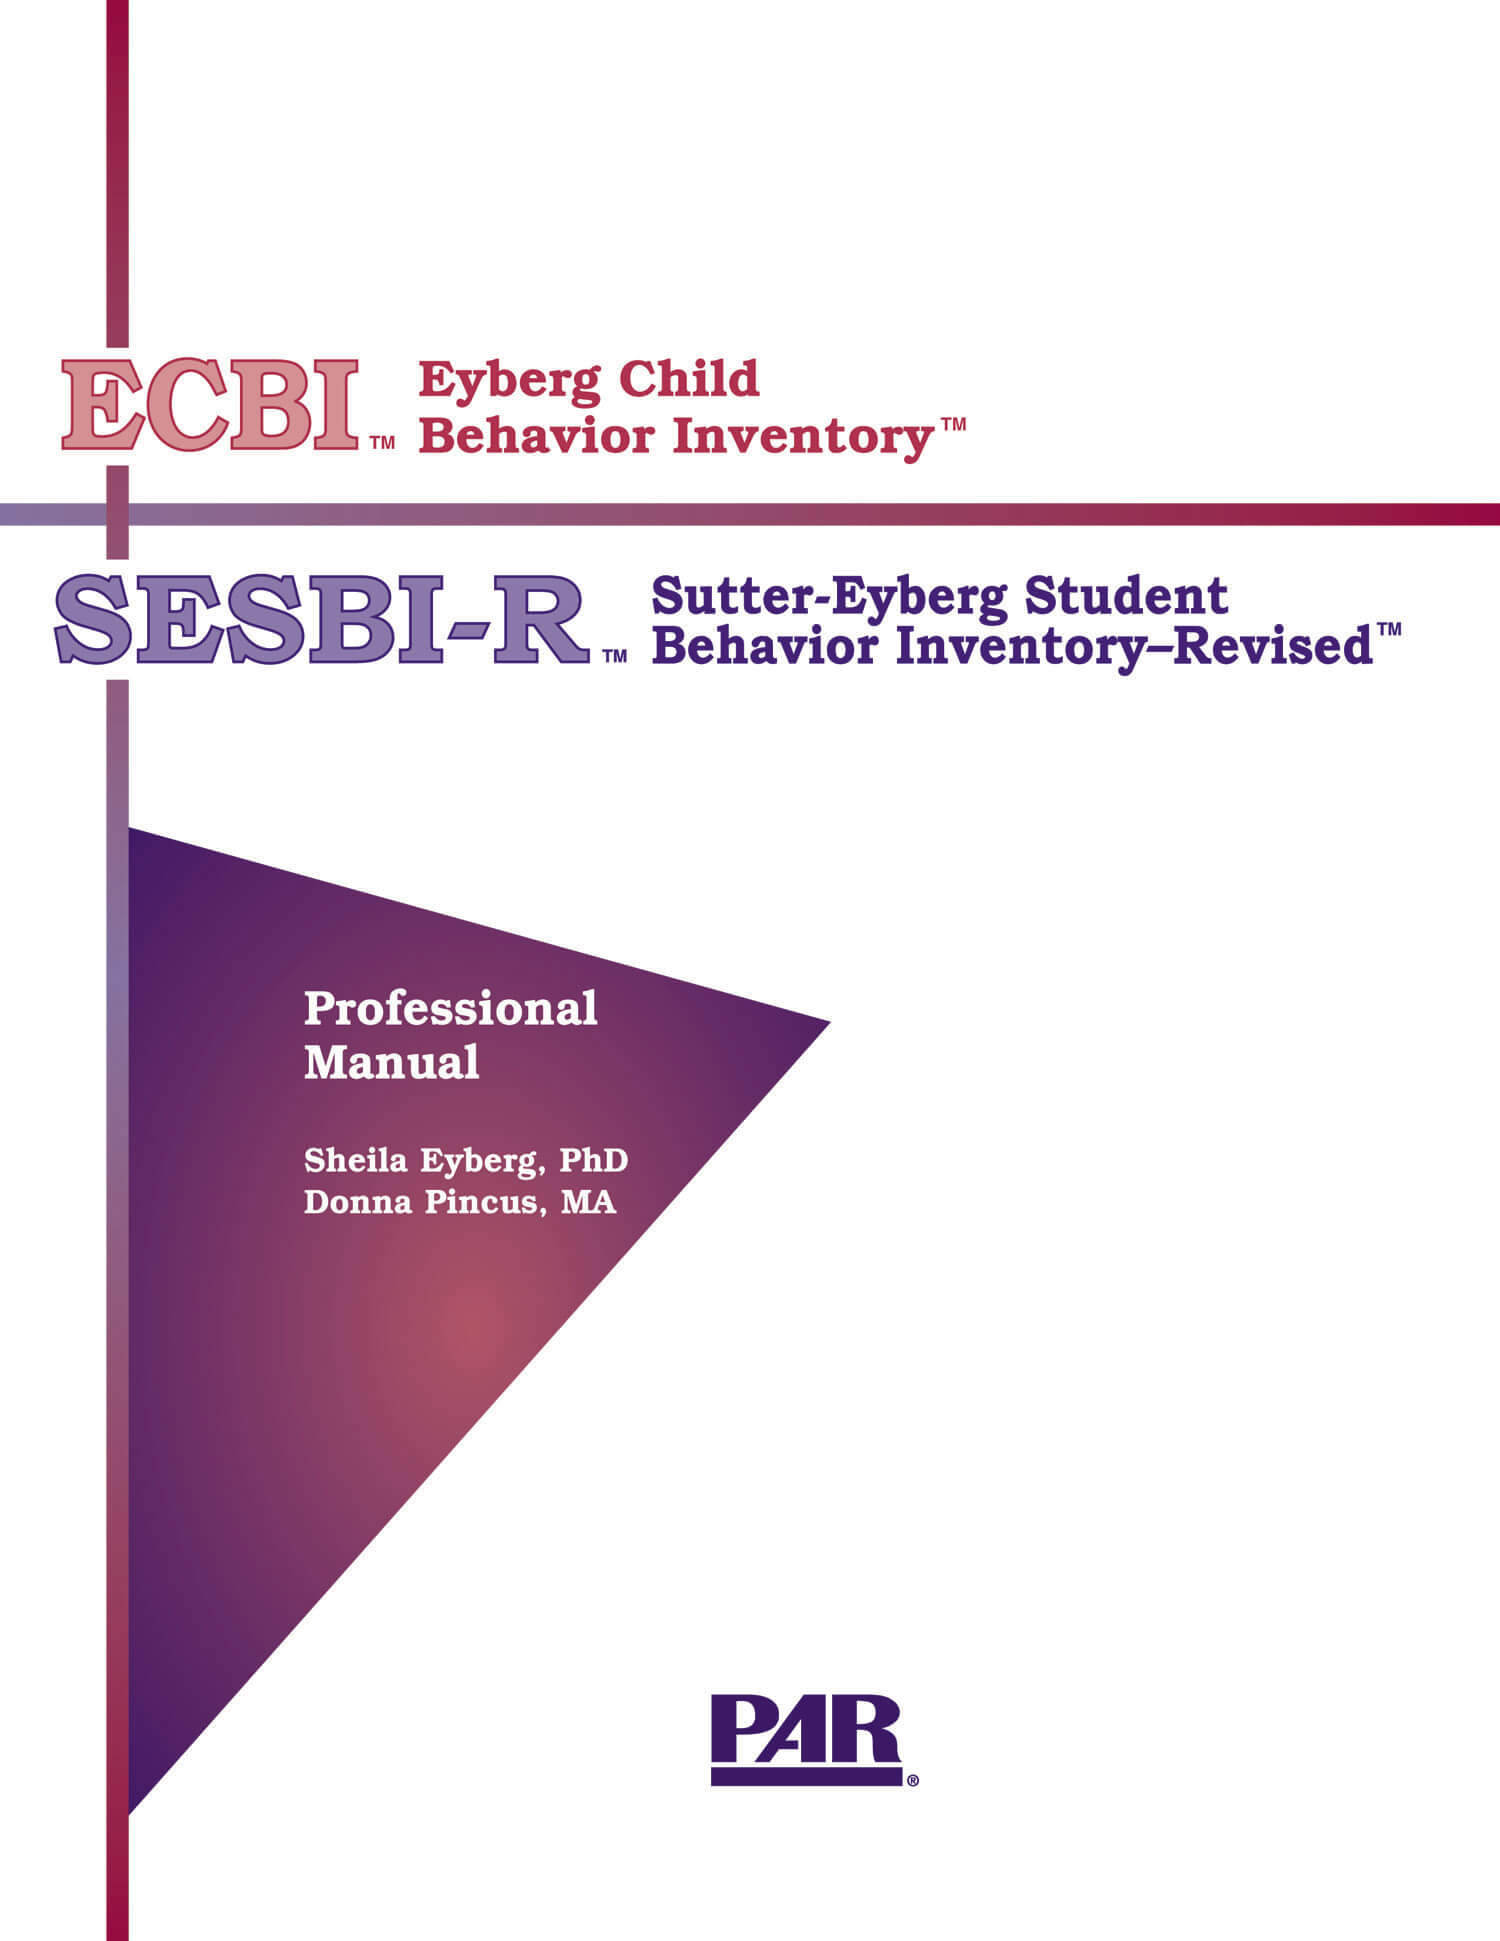 Eyberg Child Behavior Inventory™ and Sutter-Eyberg Student Behavior Inventory-Revised™ - 